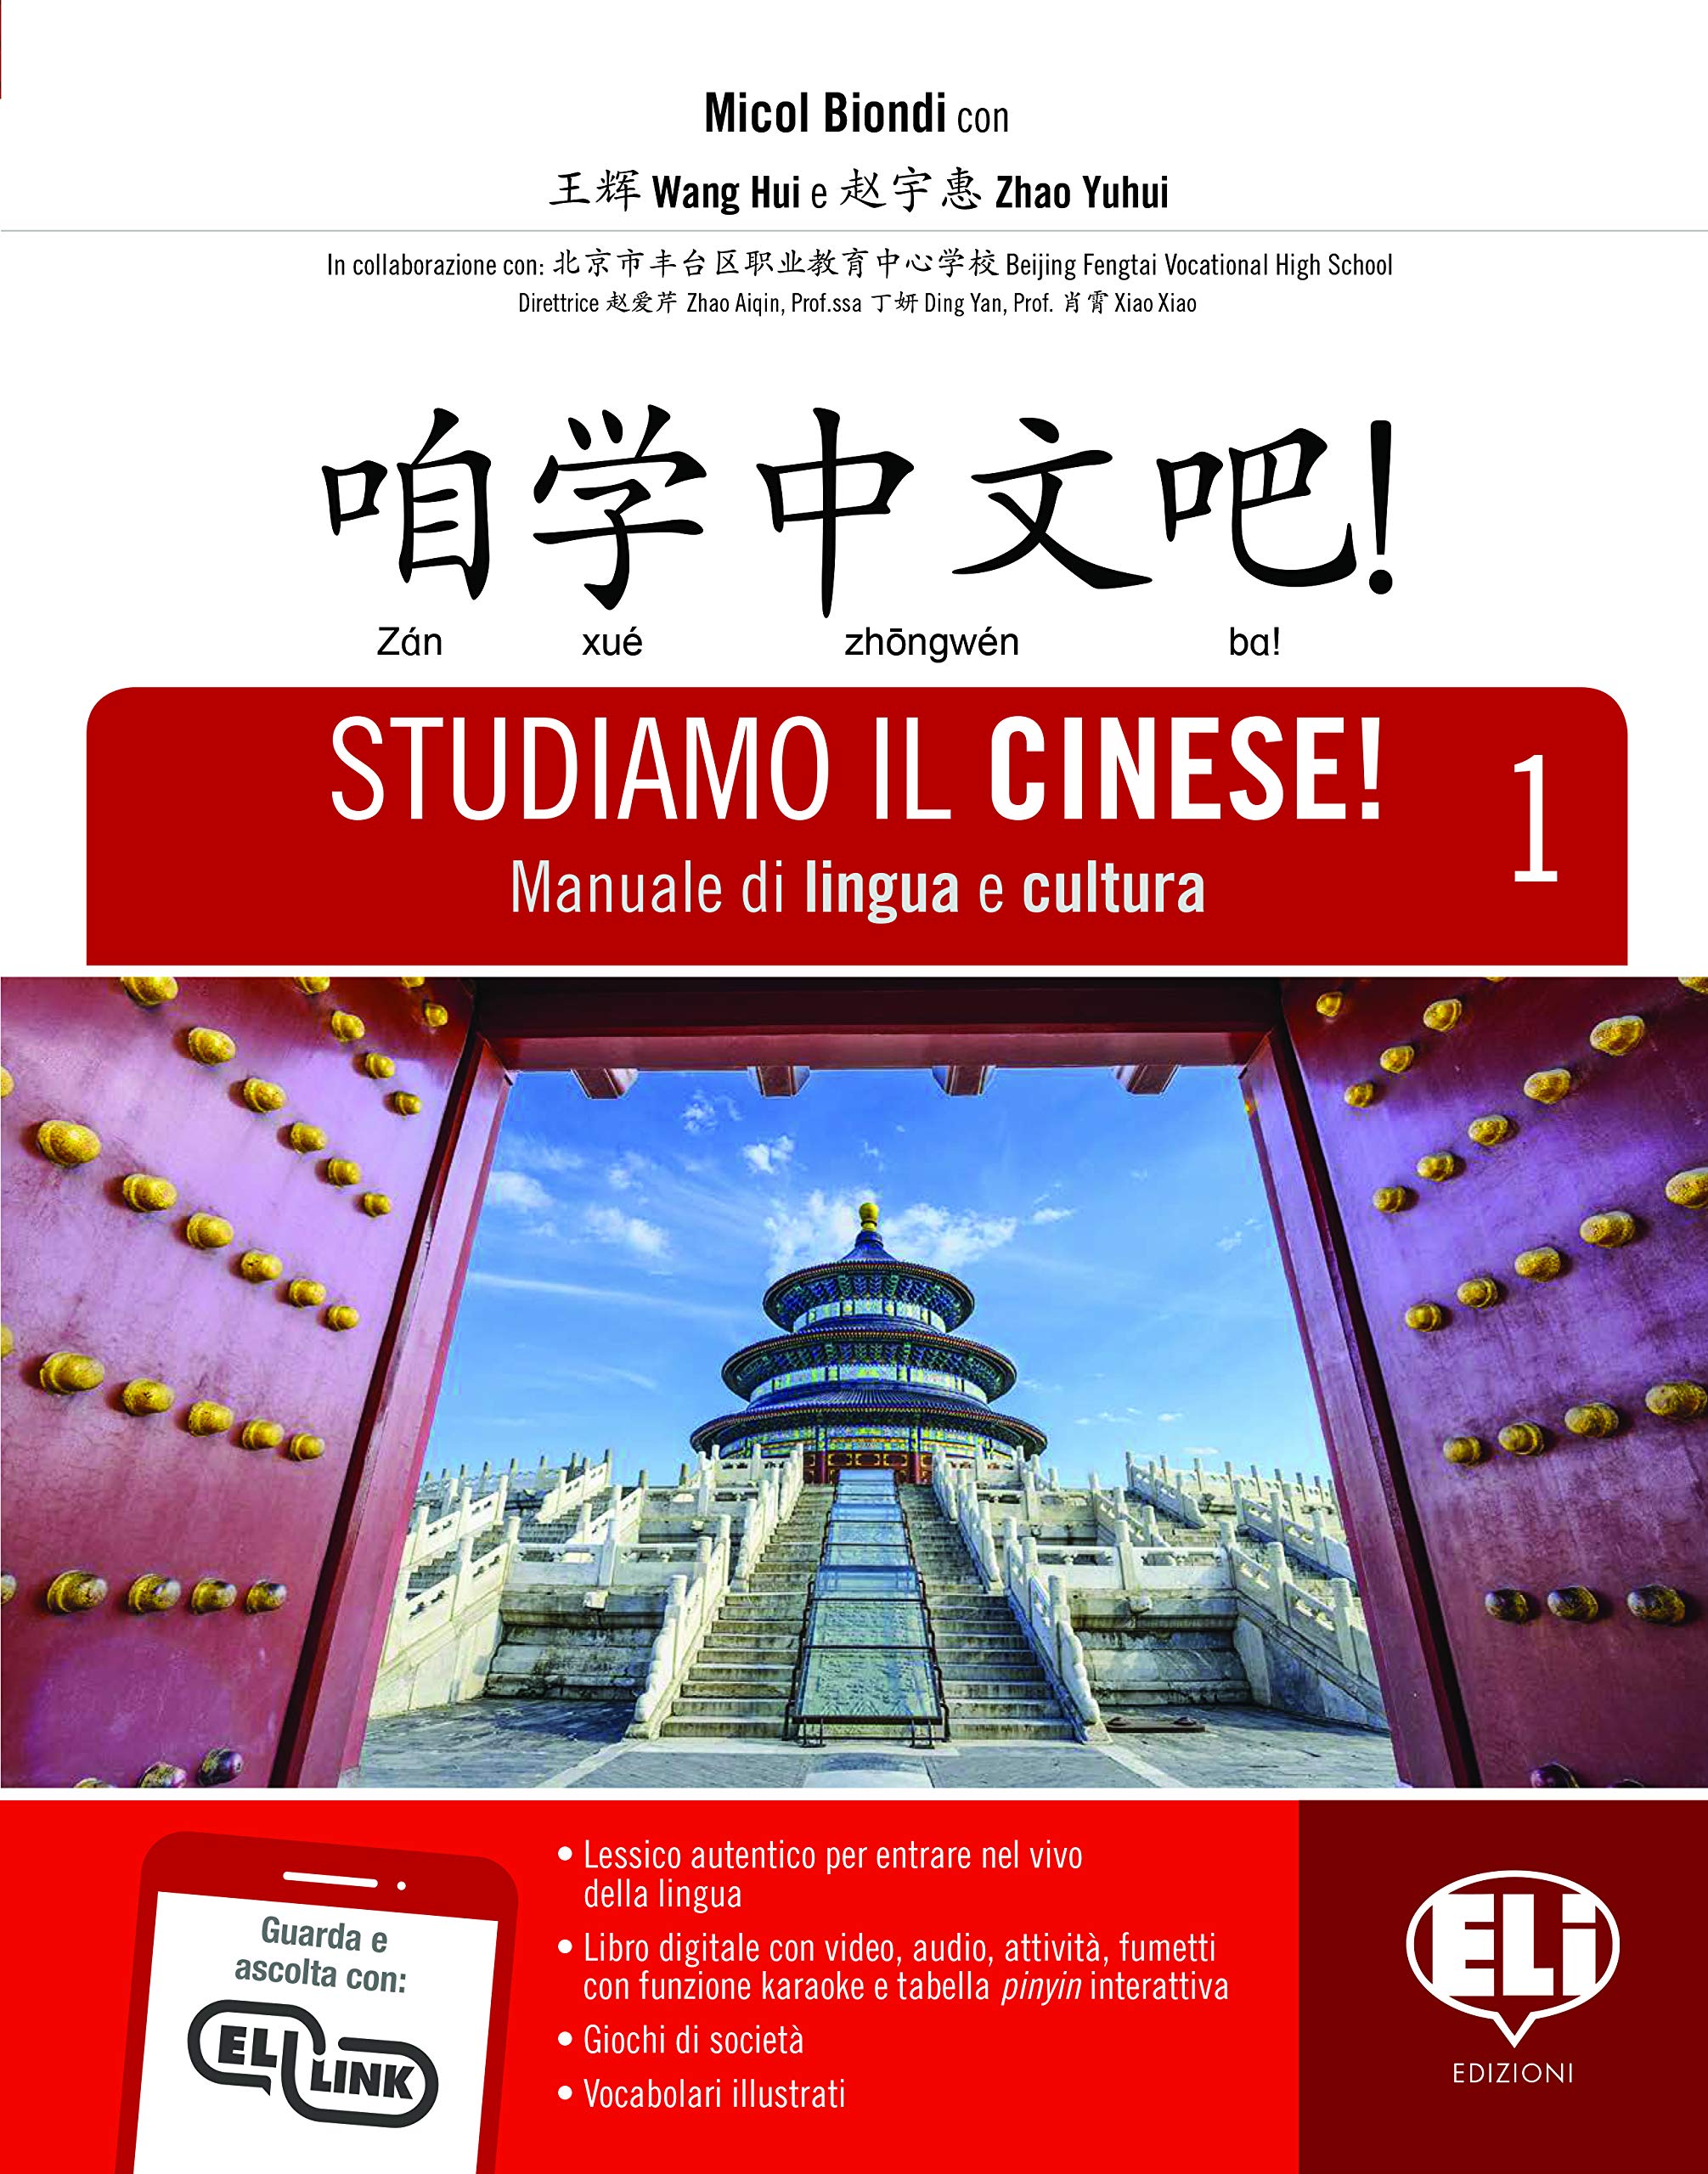 Studiamo il cinese! vol. 1